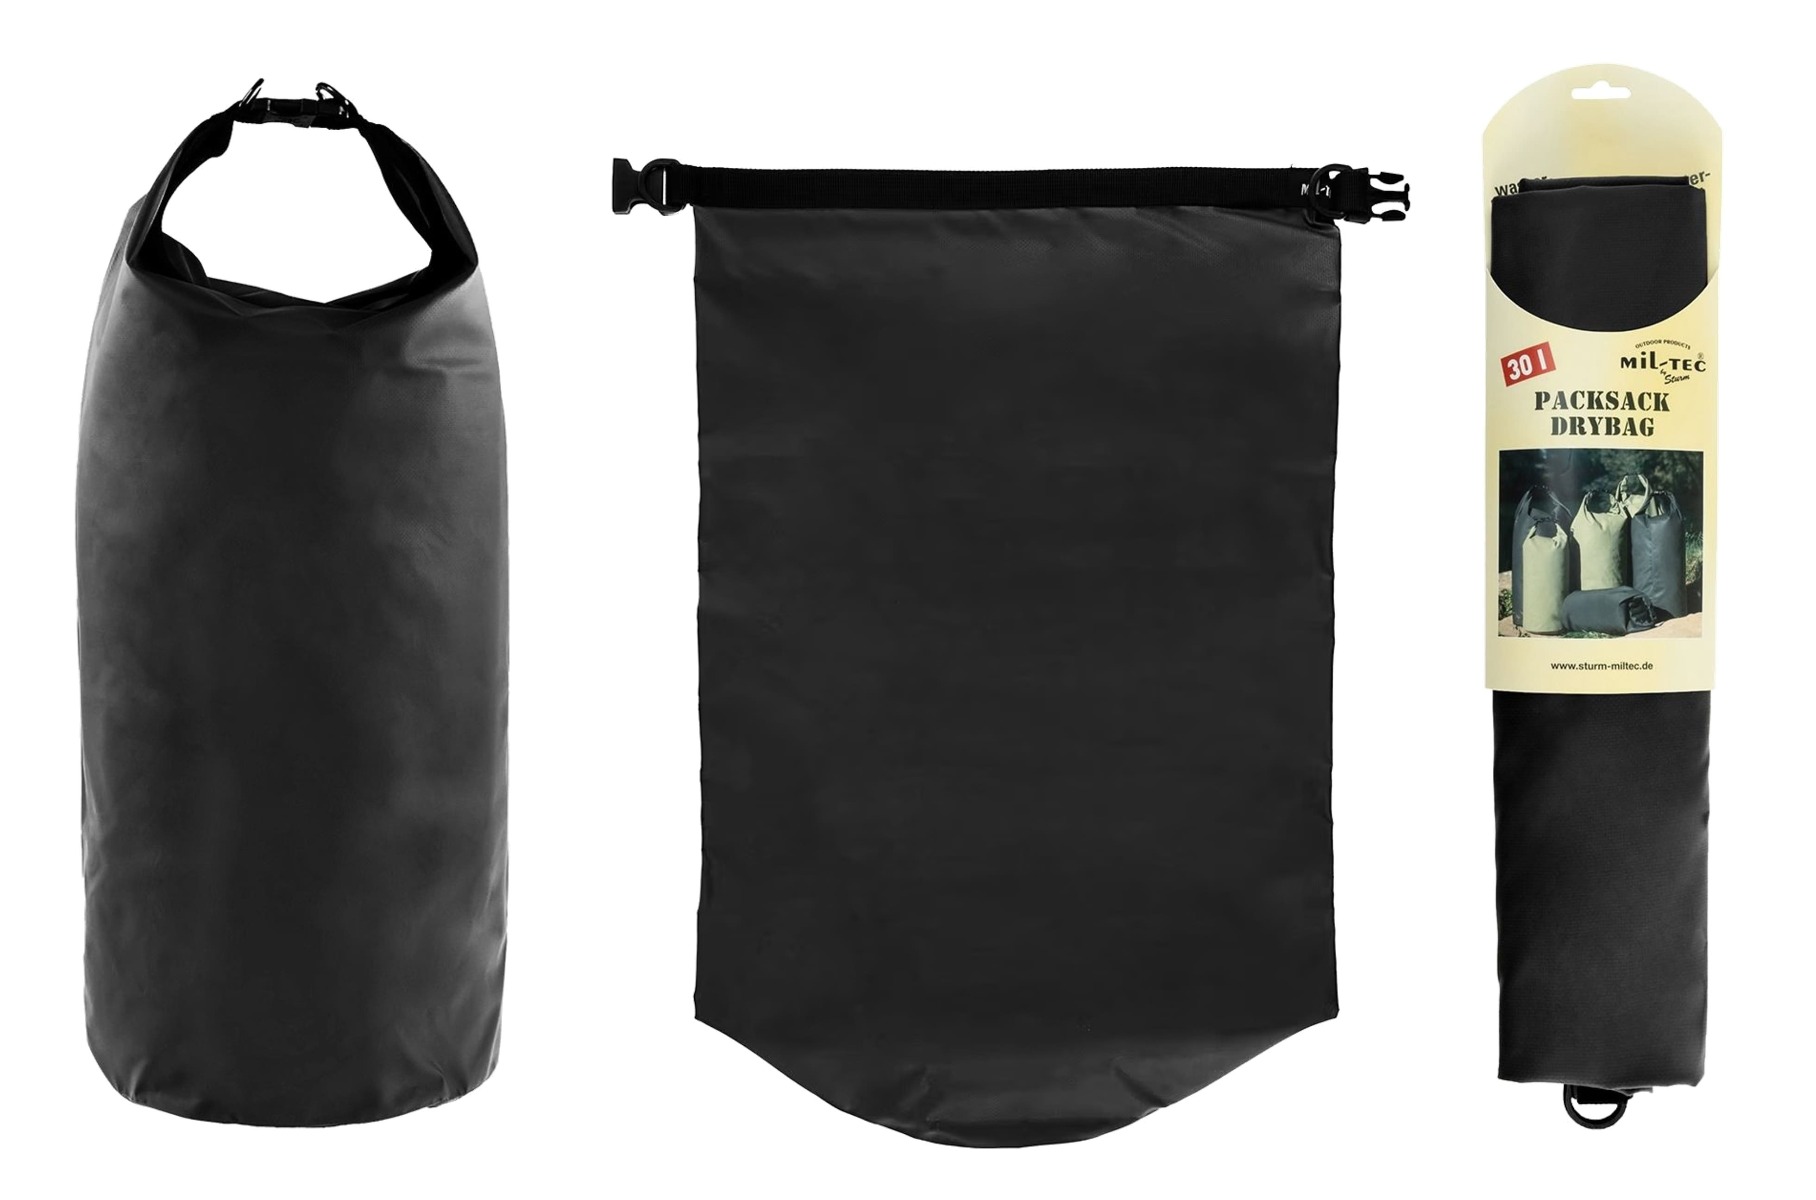 DRY BAG 30 MILTEC - vojaška nepremočljiva vreča (30 litrov) za nahrbtnike srednjega volumna črna barva Vodotesna torba zasnovana za prenašanje prtljage, spalne vreče, oblačil, dokumentov in drugih osebnih predmetov. Narejena je iz trpežnega, gumiranega PVC.